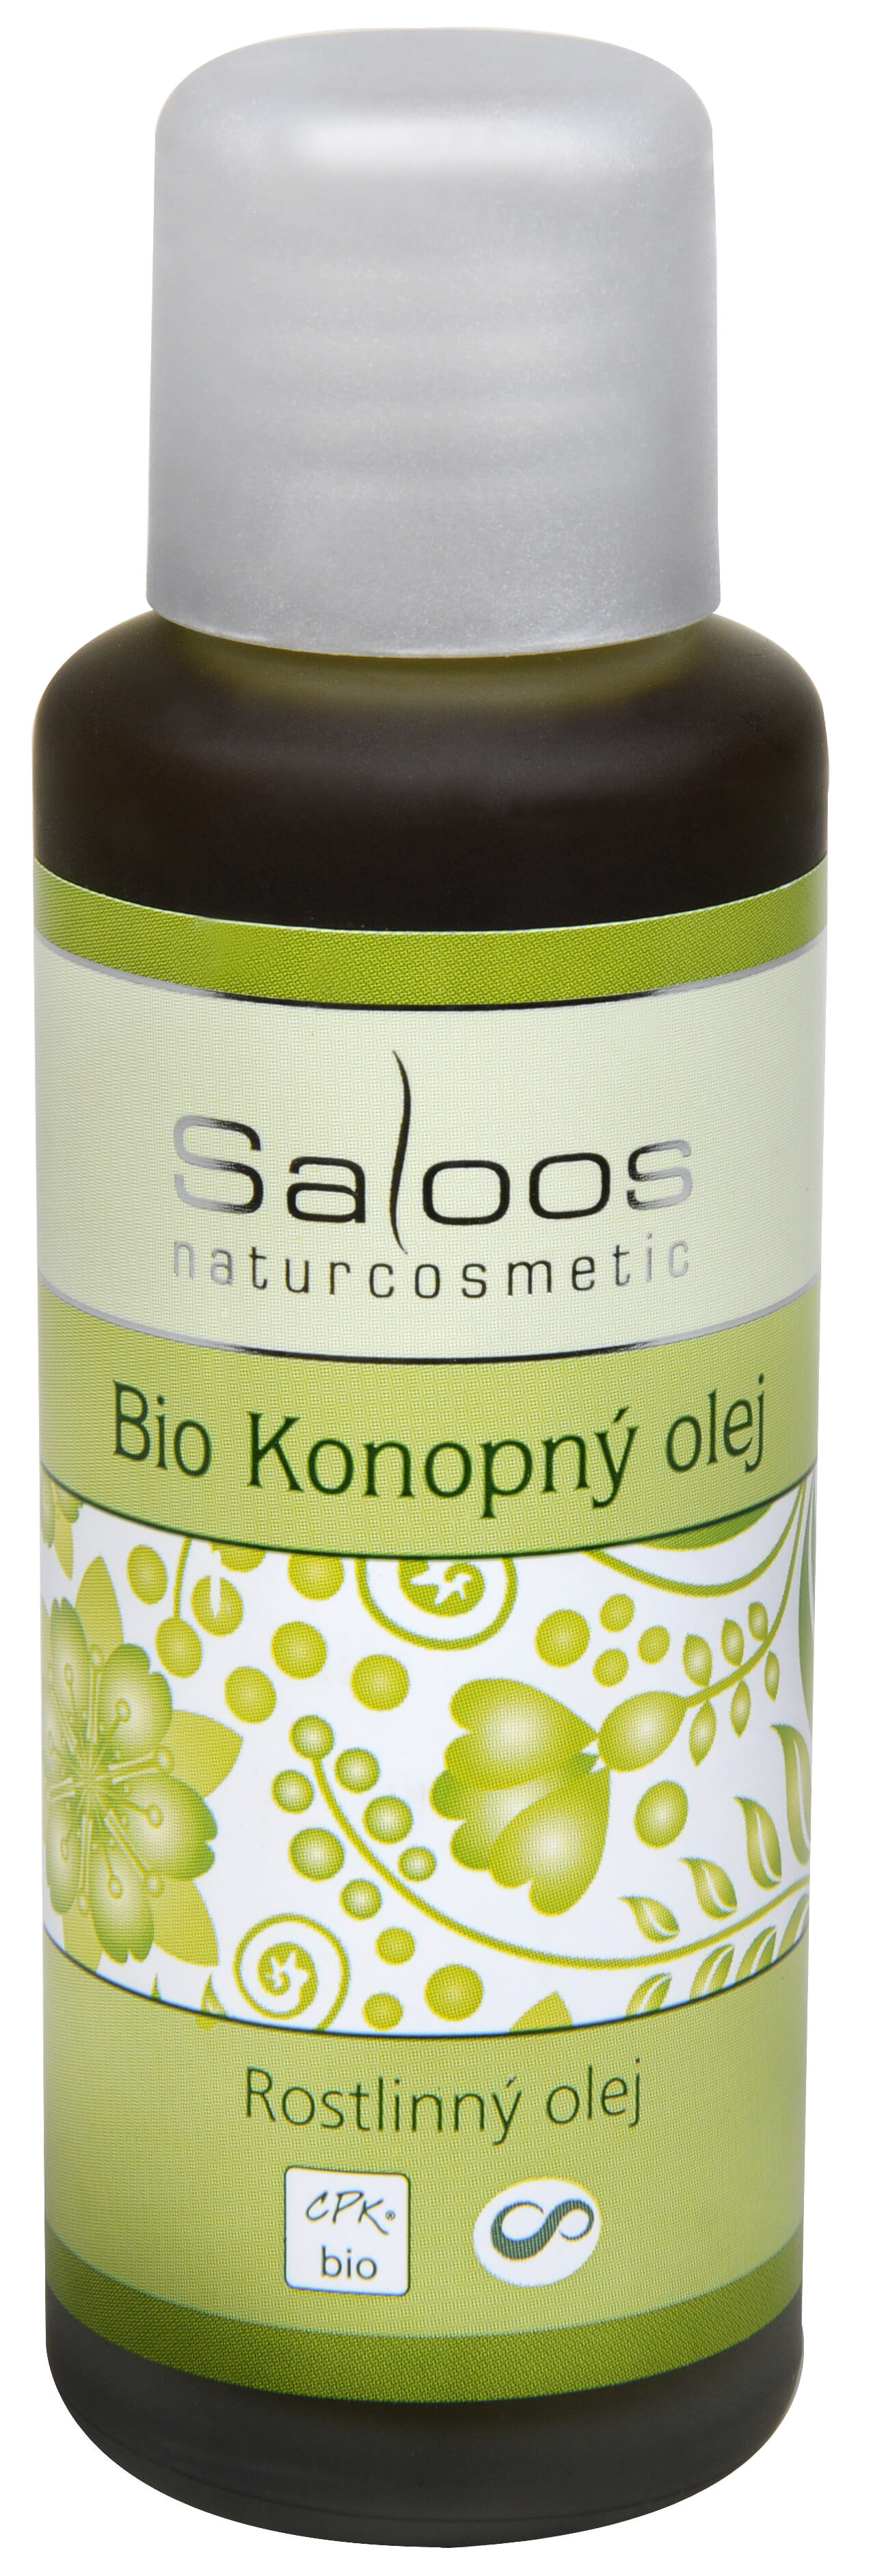 Zobrazit detail výrobku Saloos Bio Konopný olej lisovaný za studena 50 ml